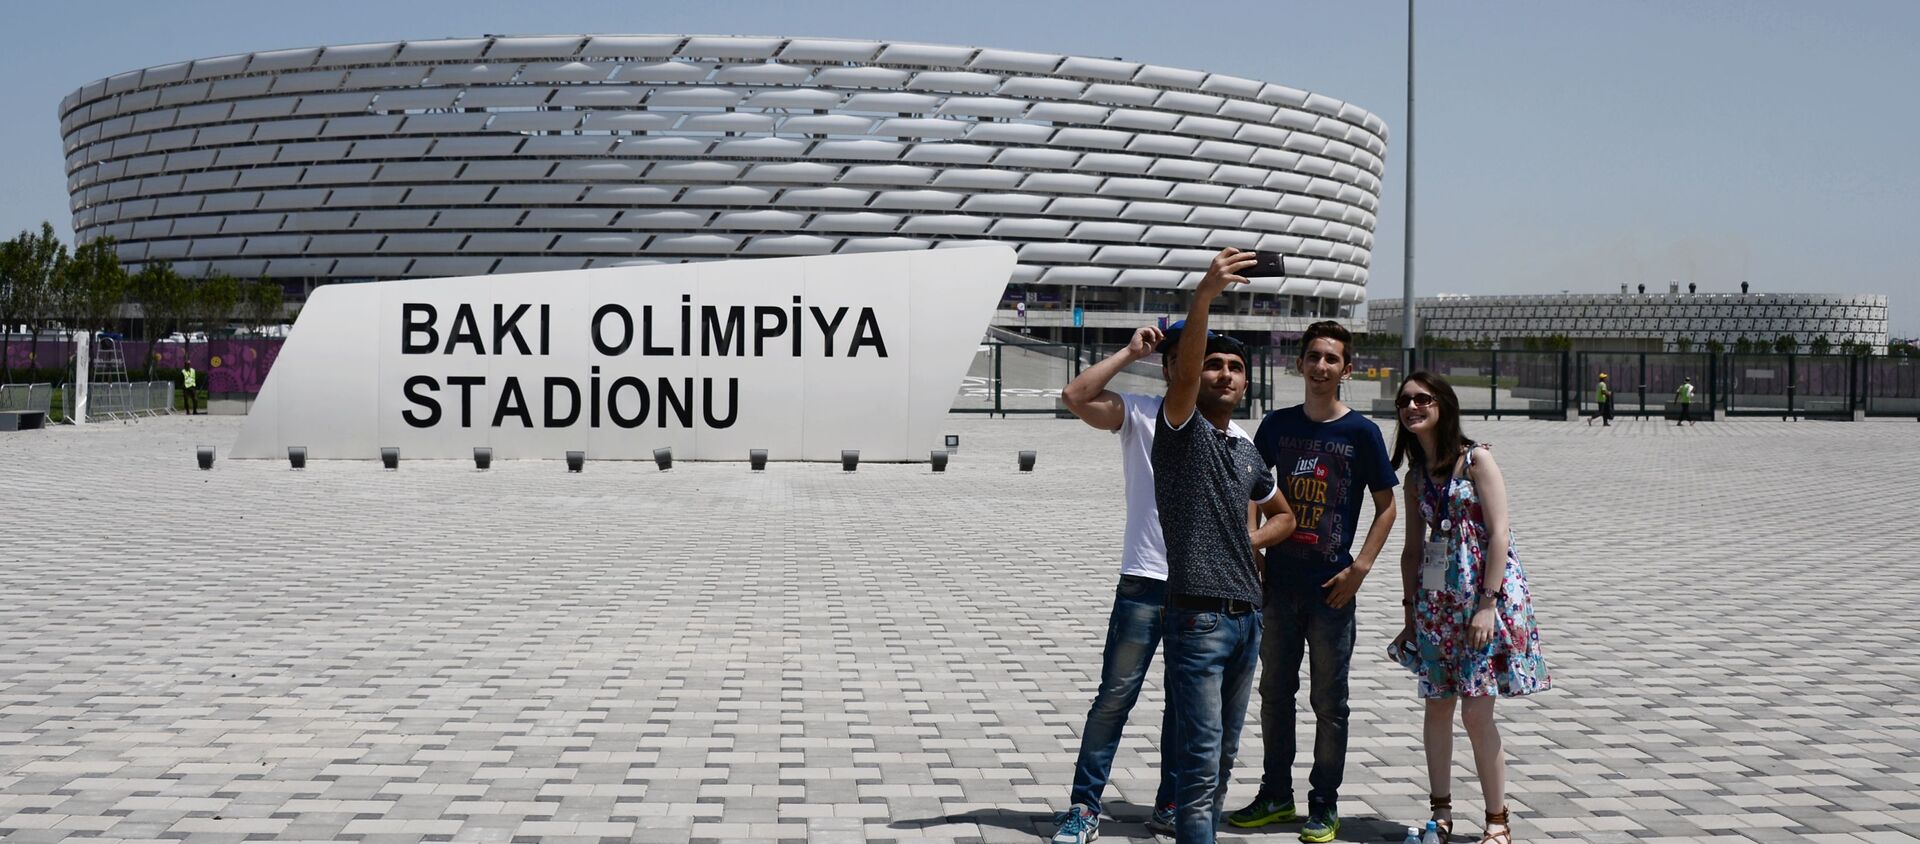 Прохожие фотографируются у Национального олимпийского стадиона в Баку - Sputnik Азербайджан, 1920, 11.02.2021